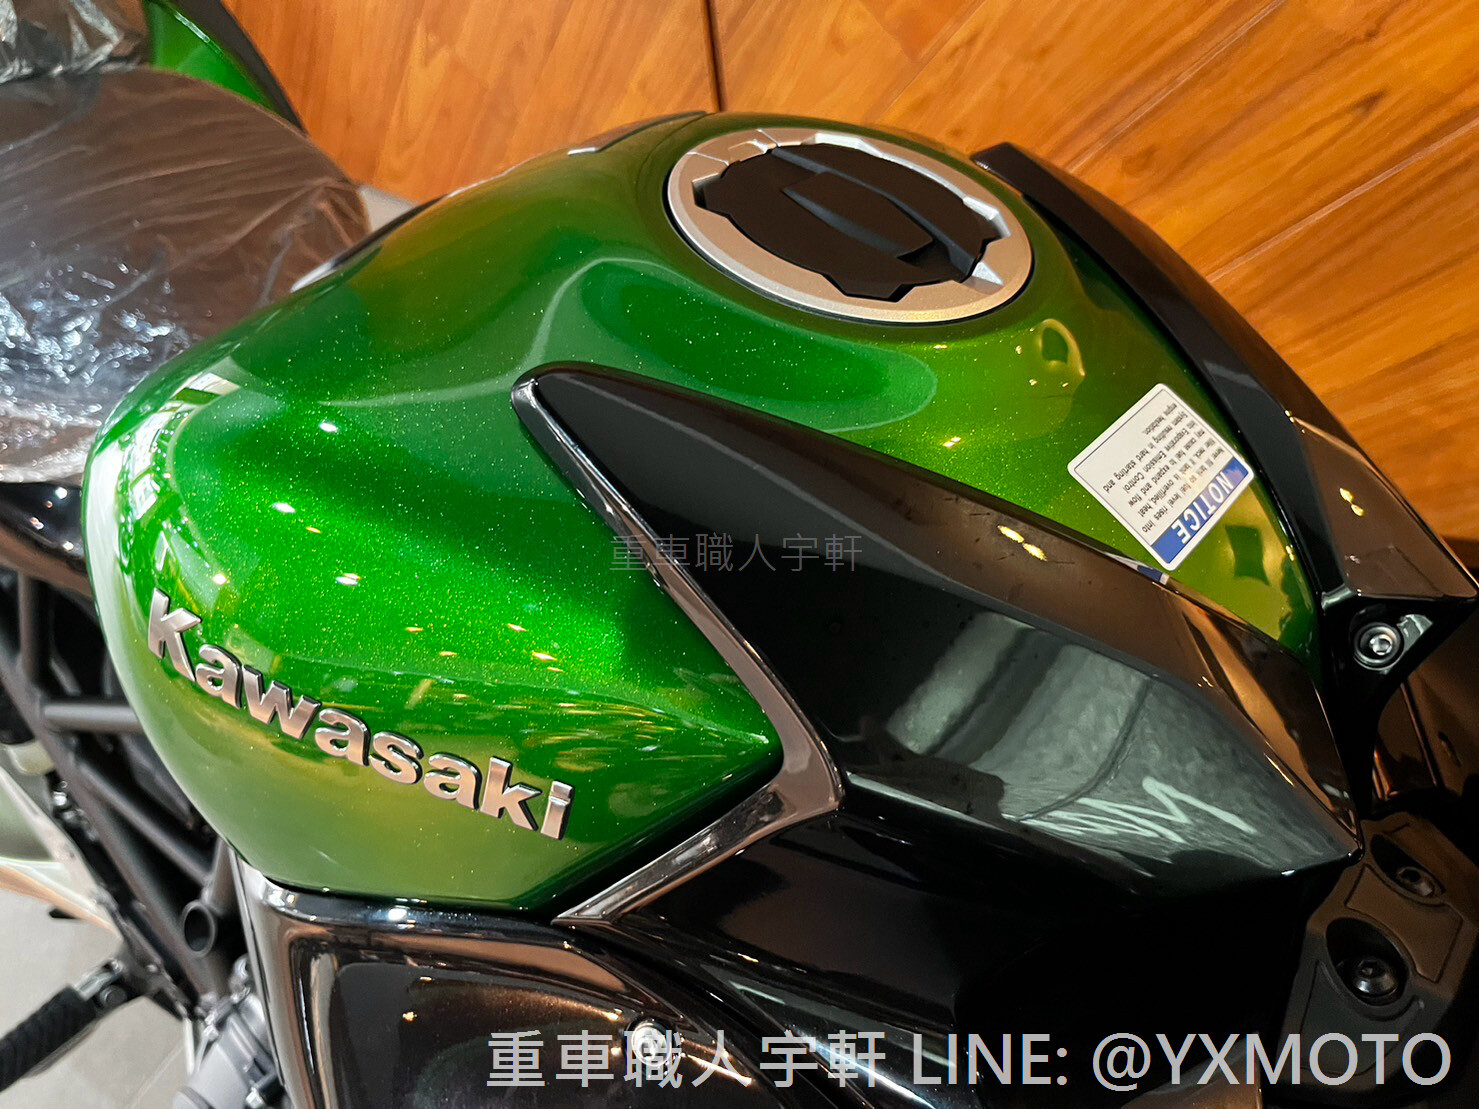 KAWASAKI Ninja H2 SX新車出售中 【敏傑宇軒】旗艦機械增壓跑旅 Kawasaki NINJA H2SX SE 總代理公司車 2023 | 重車銷售職人-宇軒 (敏傑)